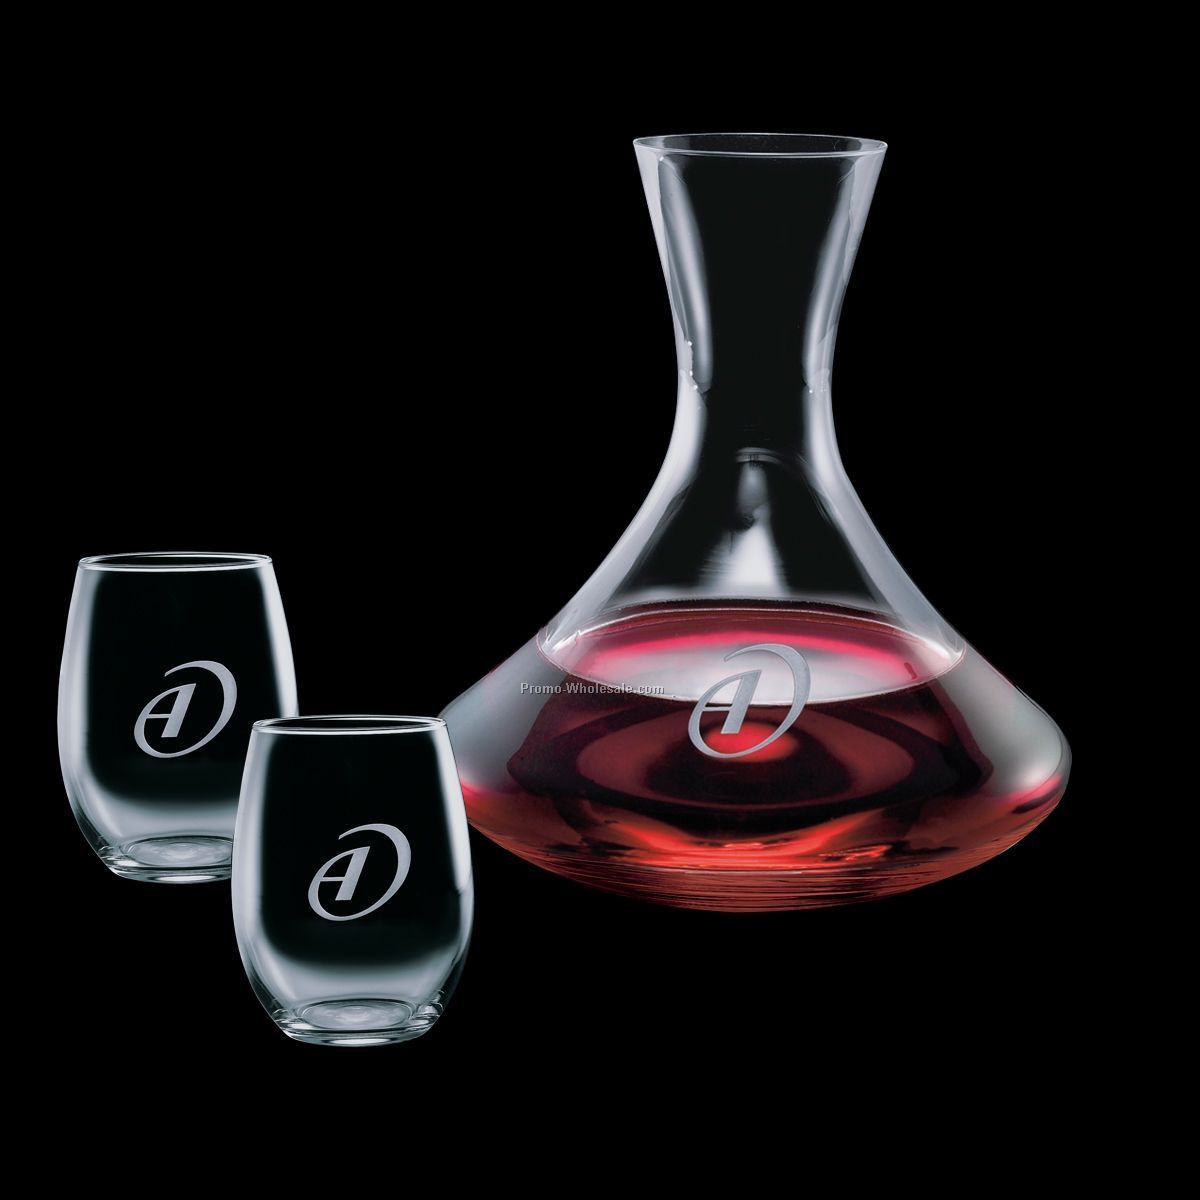 32 Oz. Carafe & 2 Stanford Wine Glasses